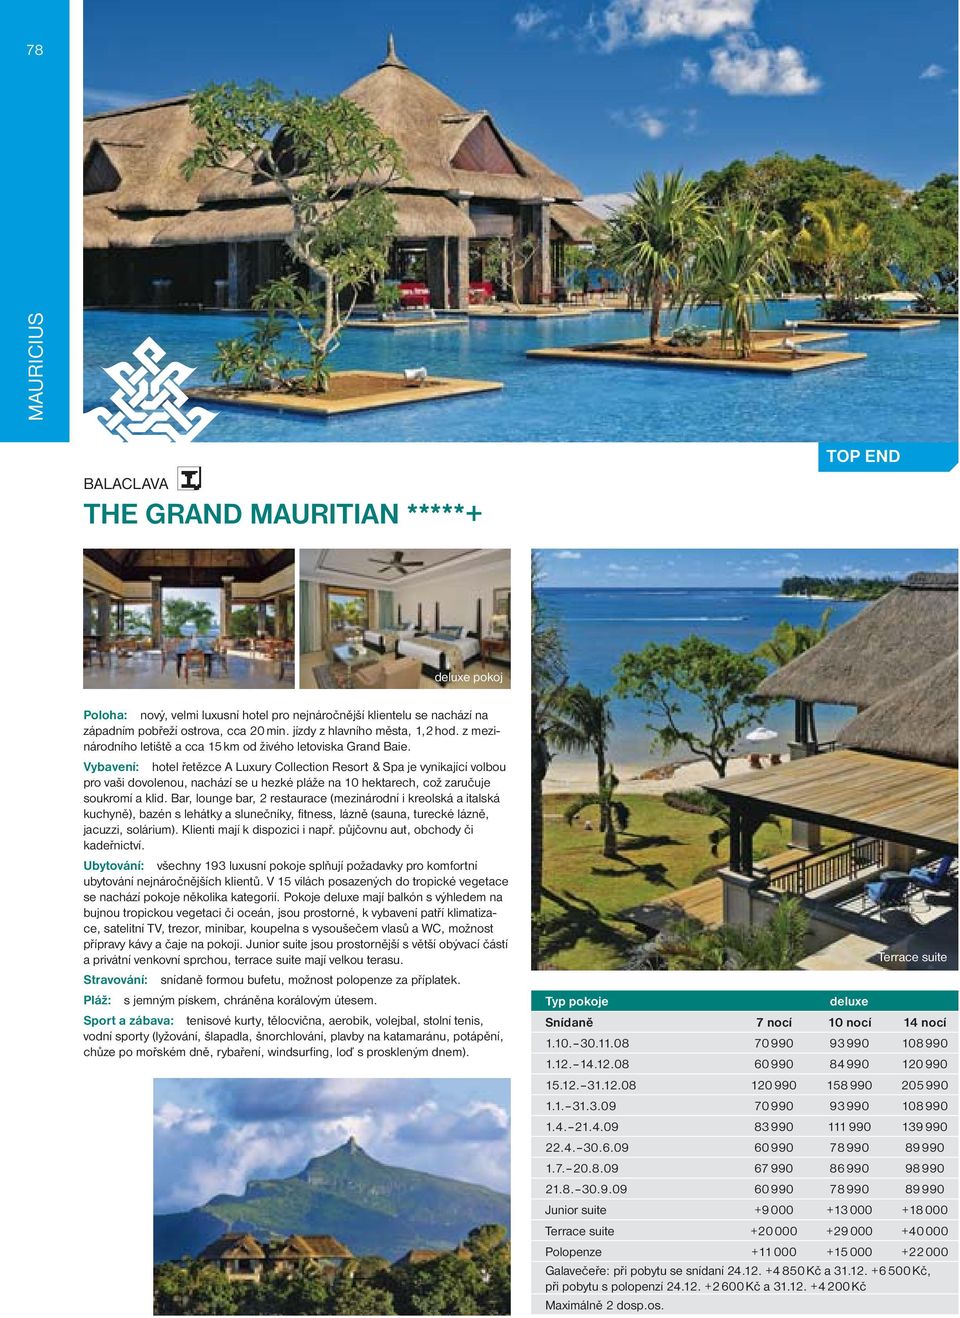 Vybavení: hotel řetězce A Luxury Collection Resort & Spa je vynikající volbou pro vaši dovolenou, nachází se u hezké pláže na 10 hektarech, což zaručuje soukromí a klid.